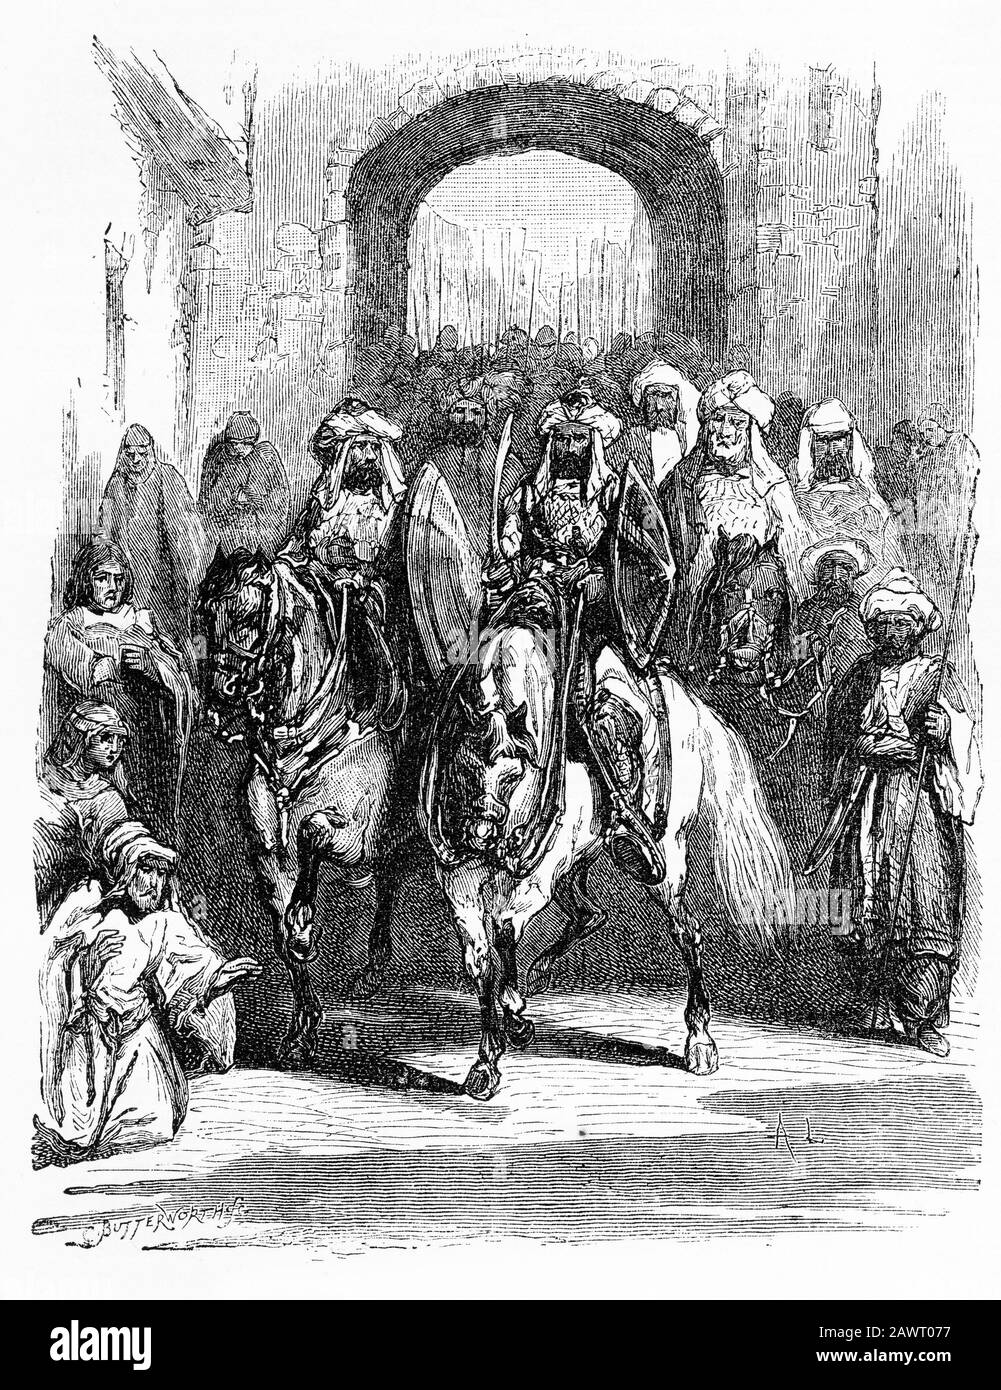 Gravur von Umar (oder Omar c 584 n. - 644 n. Chr.) einer der mächtigsten und einflussreichsten muslimischen Kalifen der Geschichte, der 637 n. Chr. nach Jerusalem einging, wo er später die Leitung für den Bau des Felsendoms auf dem Tempelberg gab. Stockfoto